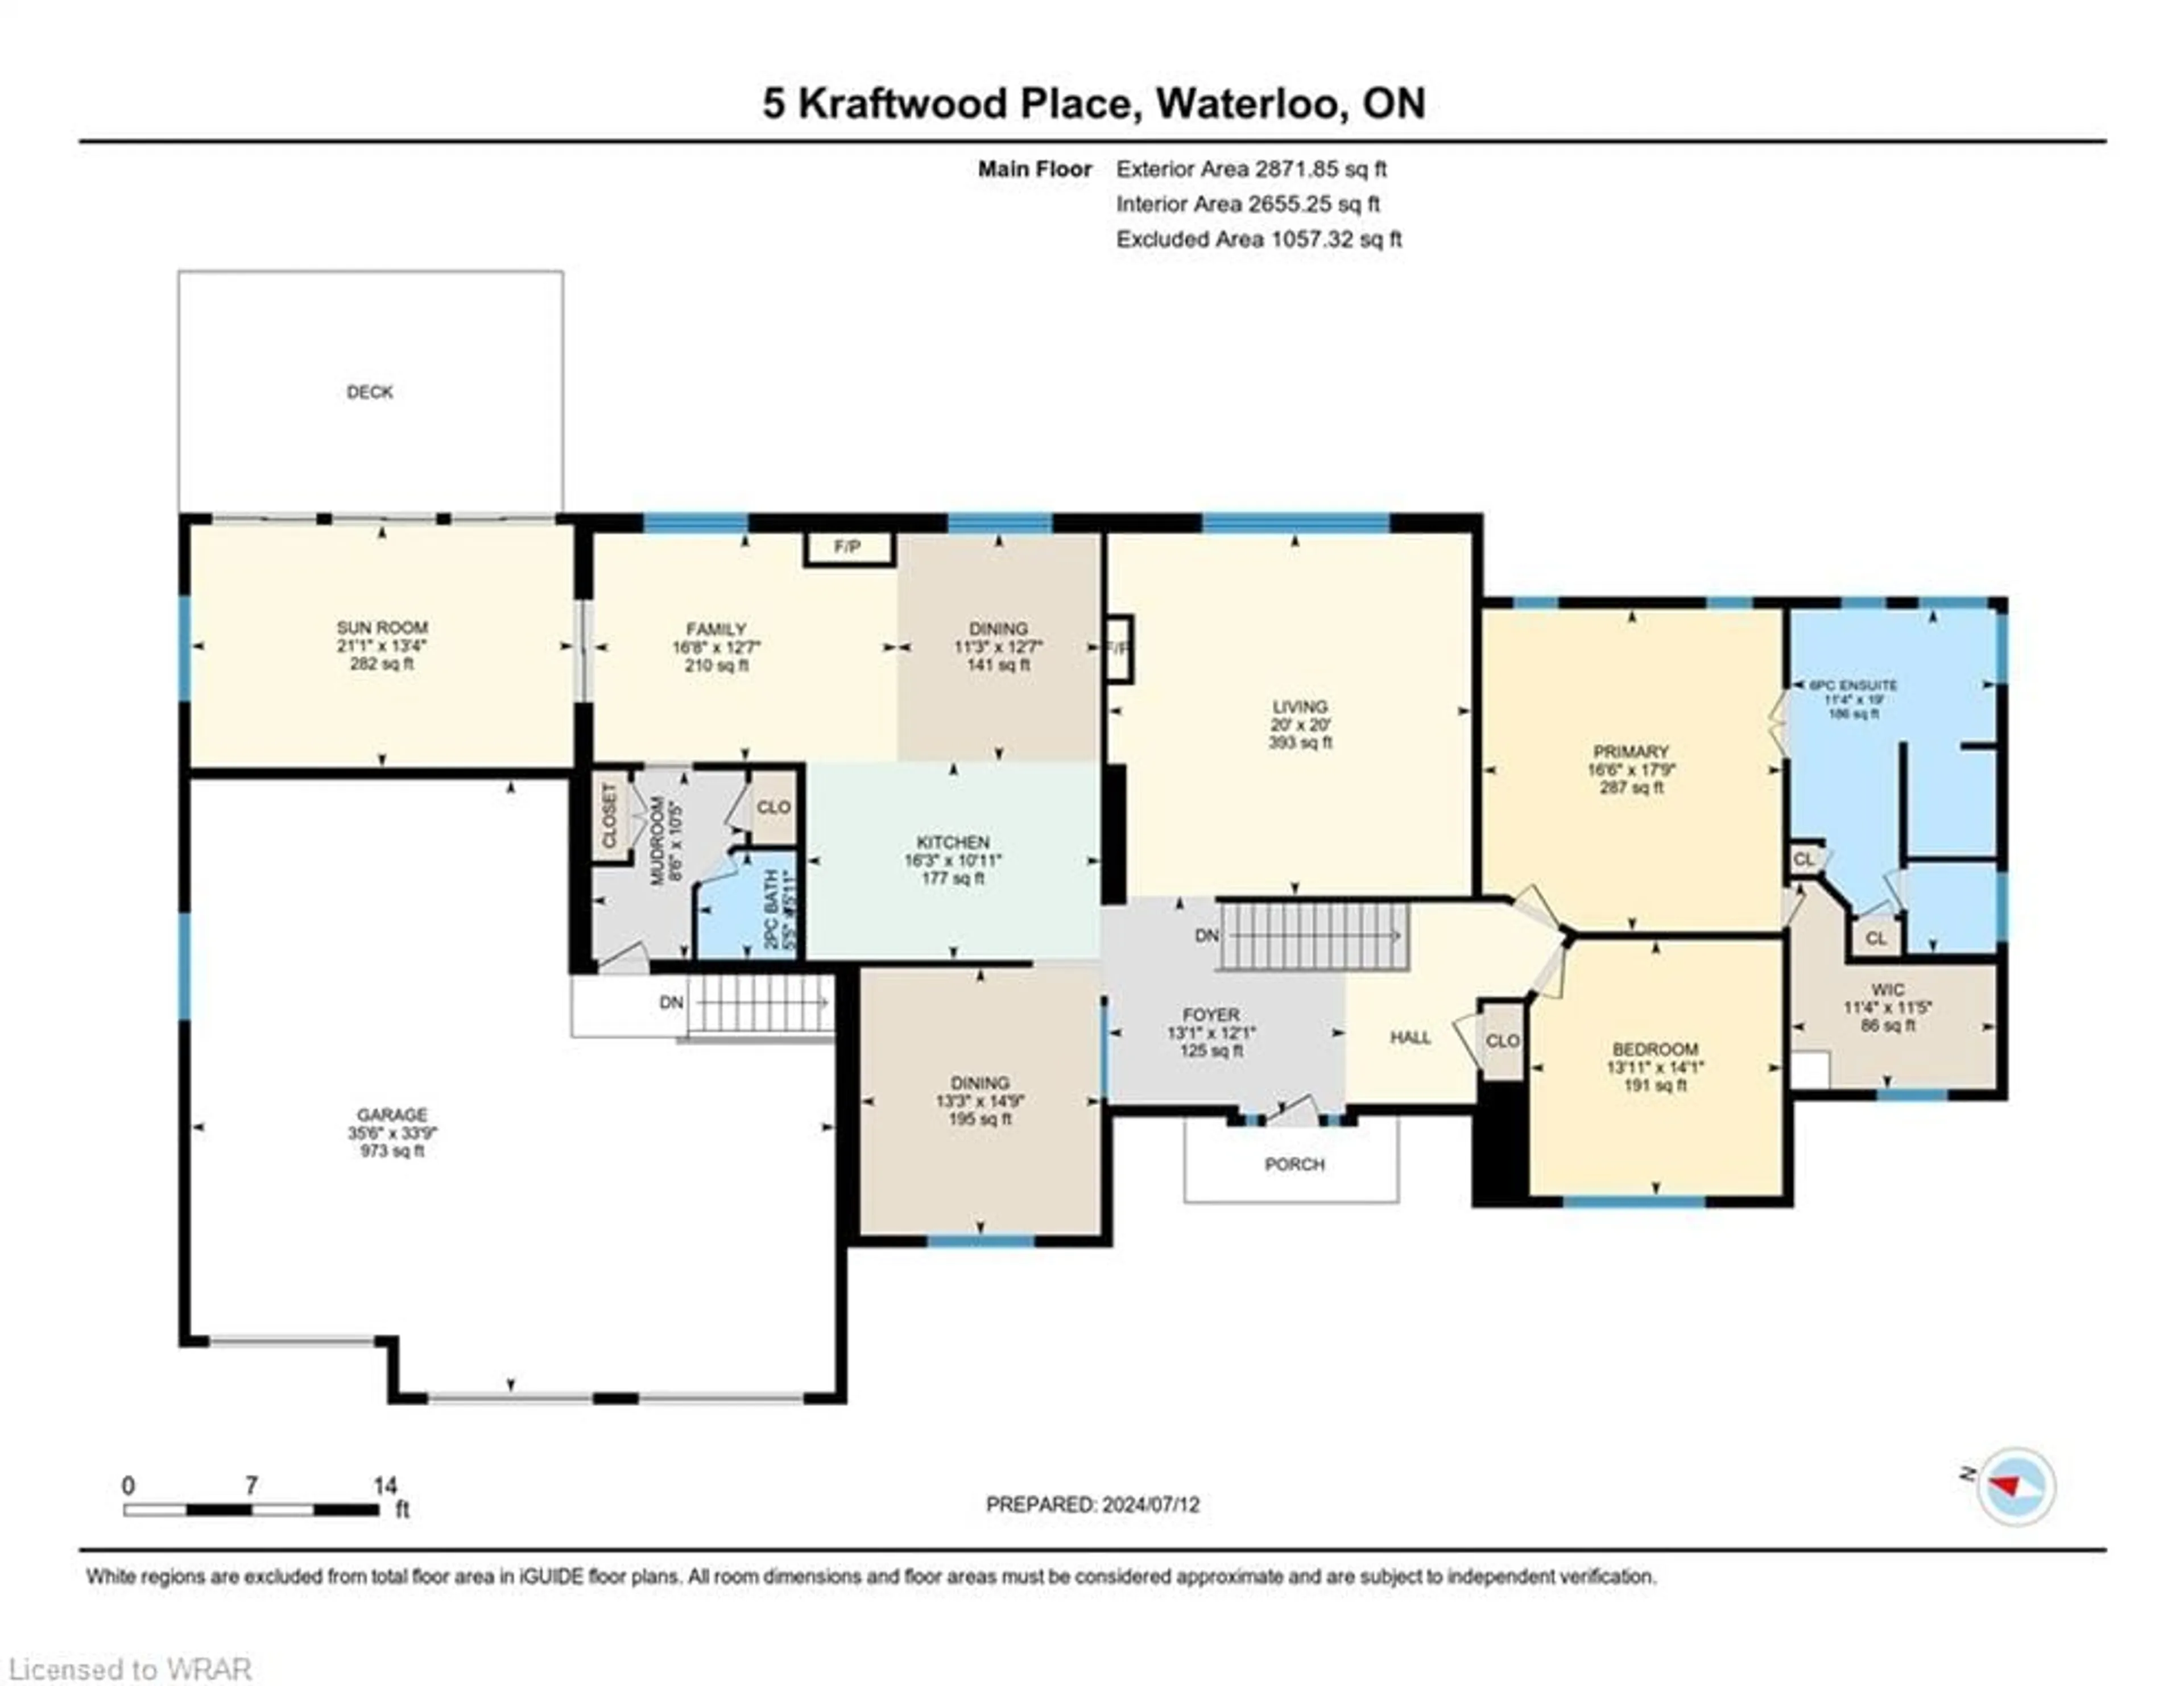 Floor plan for 5 Kraftwood Pl, Waterloo Ontario N2J 4G8